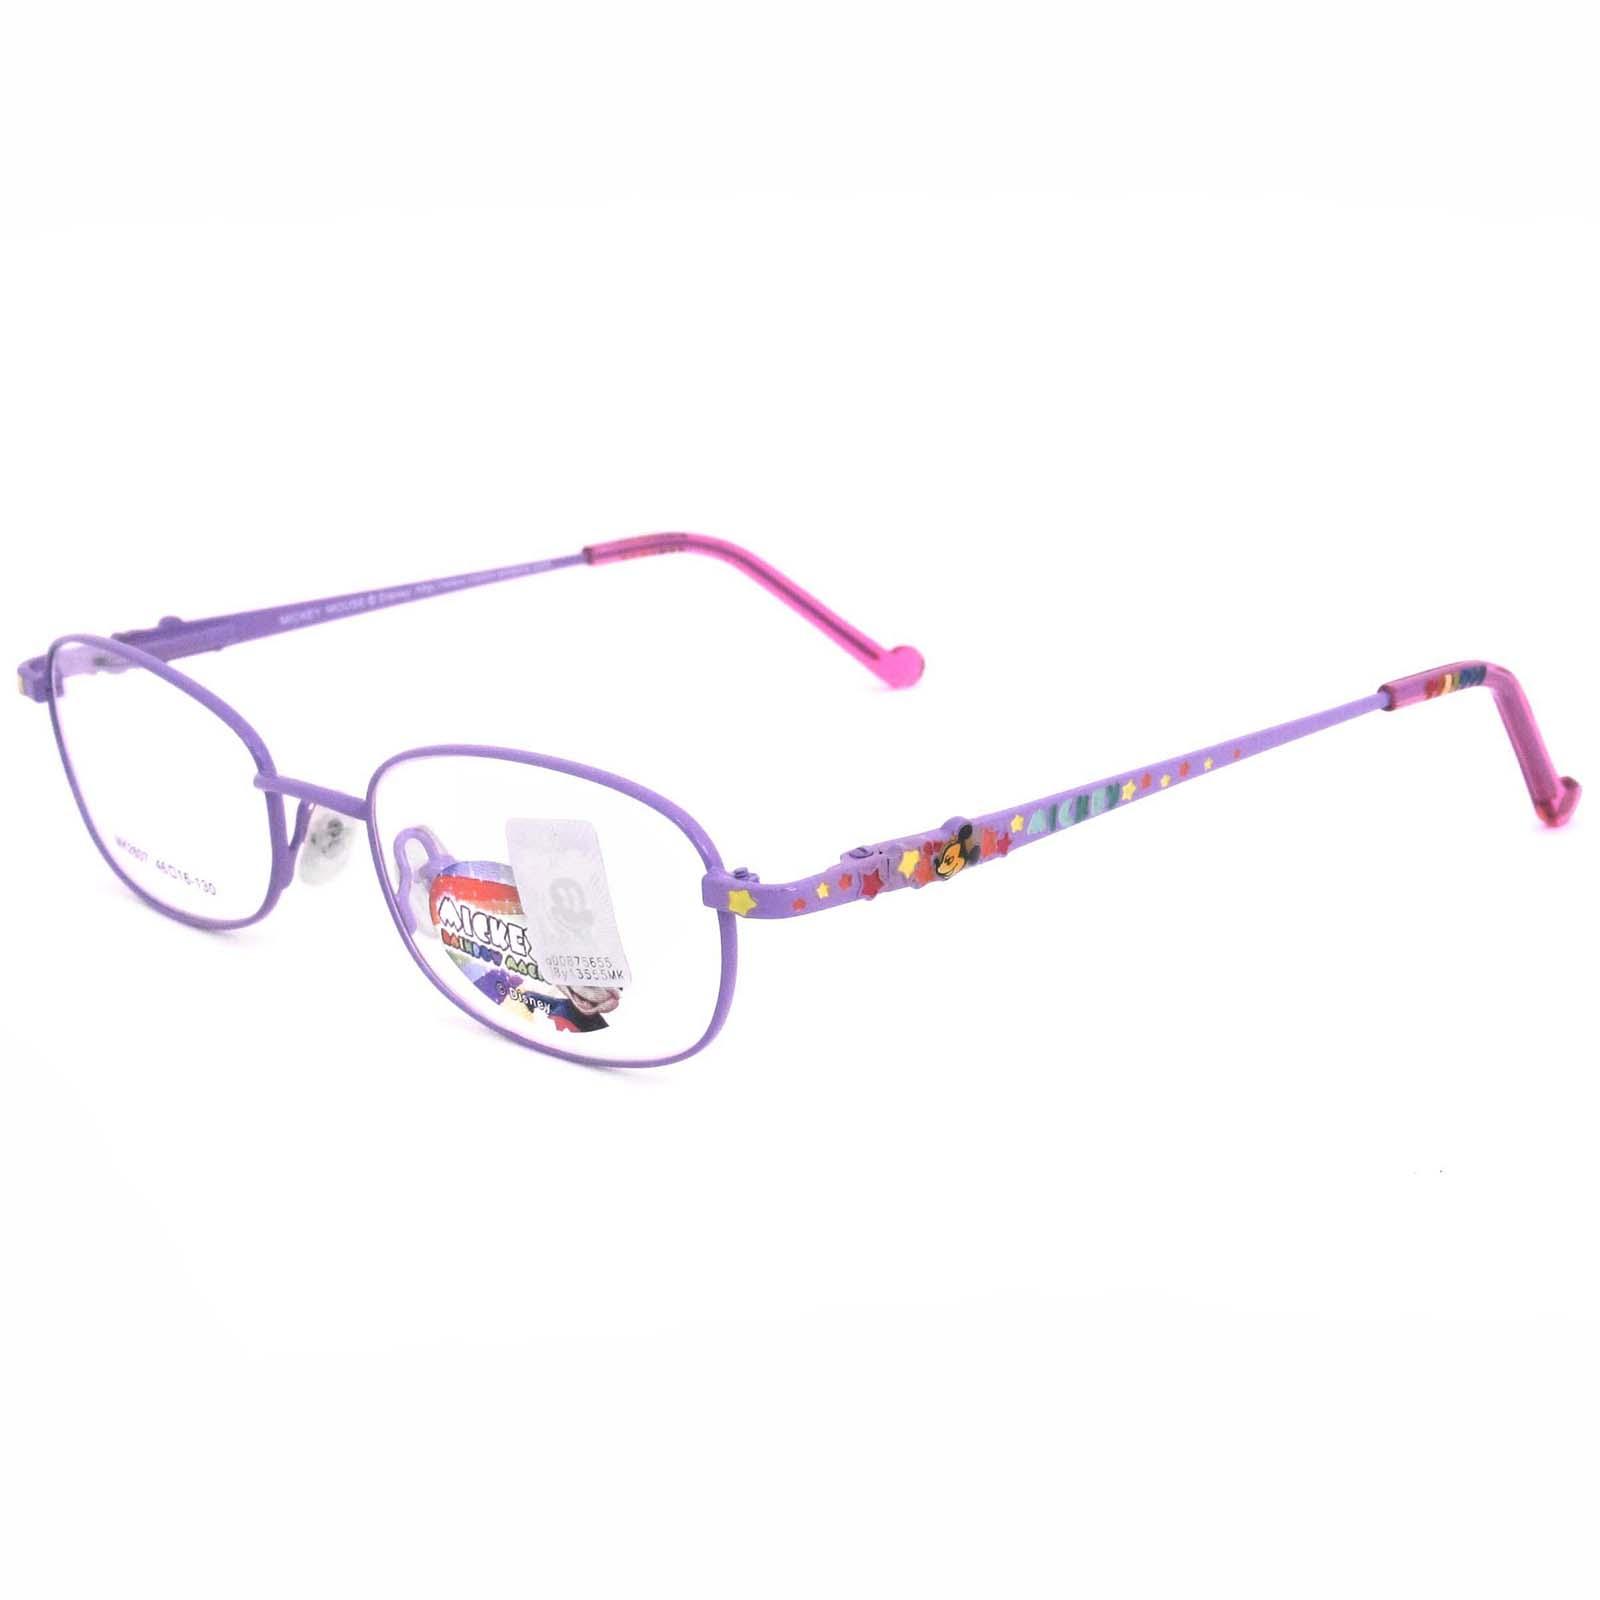 แว่นตาเกาหลีเด็ก Fashion Korea Children แว่นตาเด็ก รุ่น MK 2607 กรอบแว่นตาเด็ก Oval รูปไข่แนวนอน Eyeglass baby frame ( สำหรับตัดเลนส์ ) วัสดุ สแตนเลส สตีล เบา ขาสปริง Eyeglass Spring legs Stainless Steel material Eyewear Kid  Top Glasses